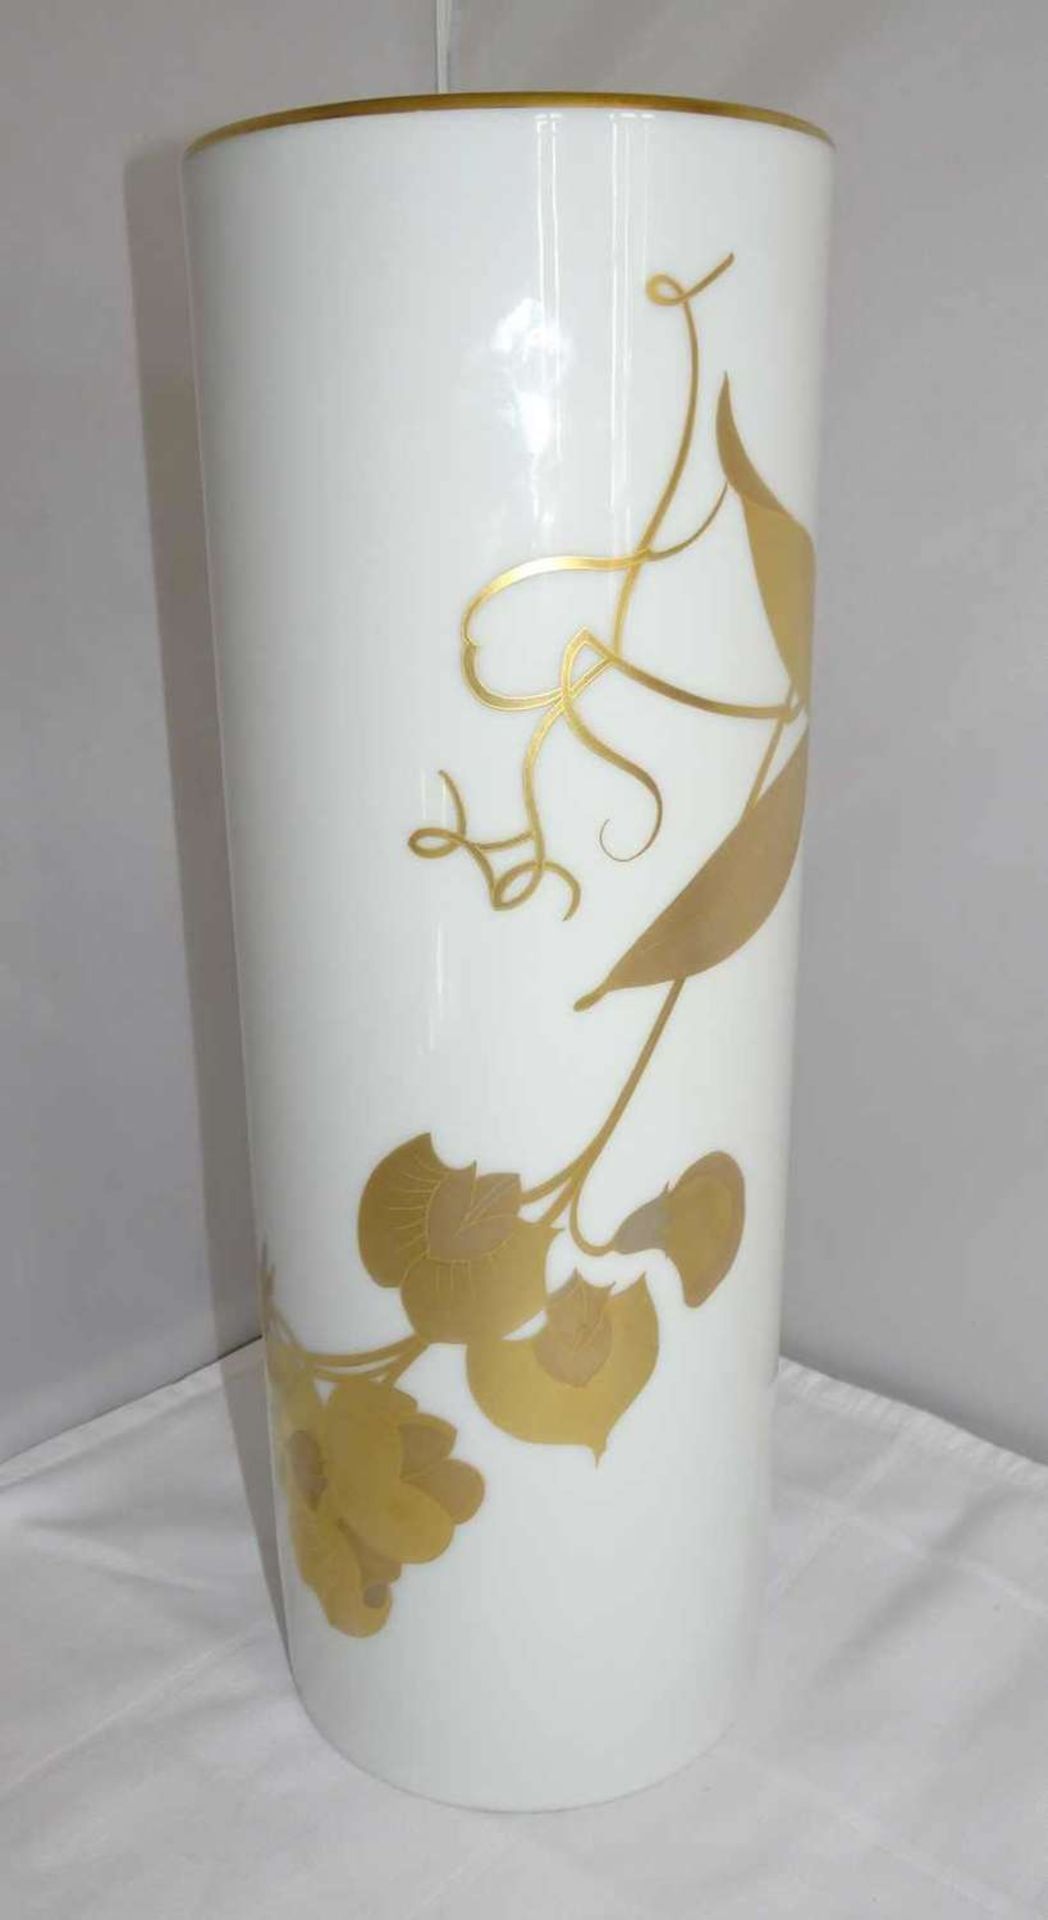 Hutschenreuther Vase - 25 Jahre Tchibo 1974 - Leonhard Paris, Decor Montebello. Höhe ca. 32,6 cm